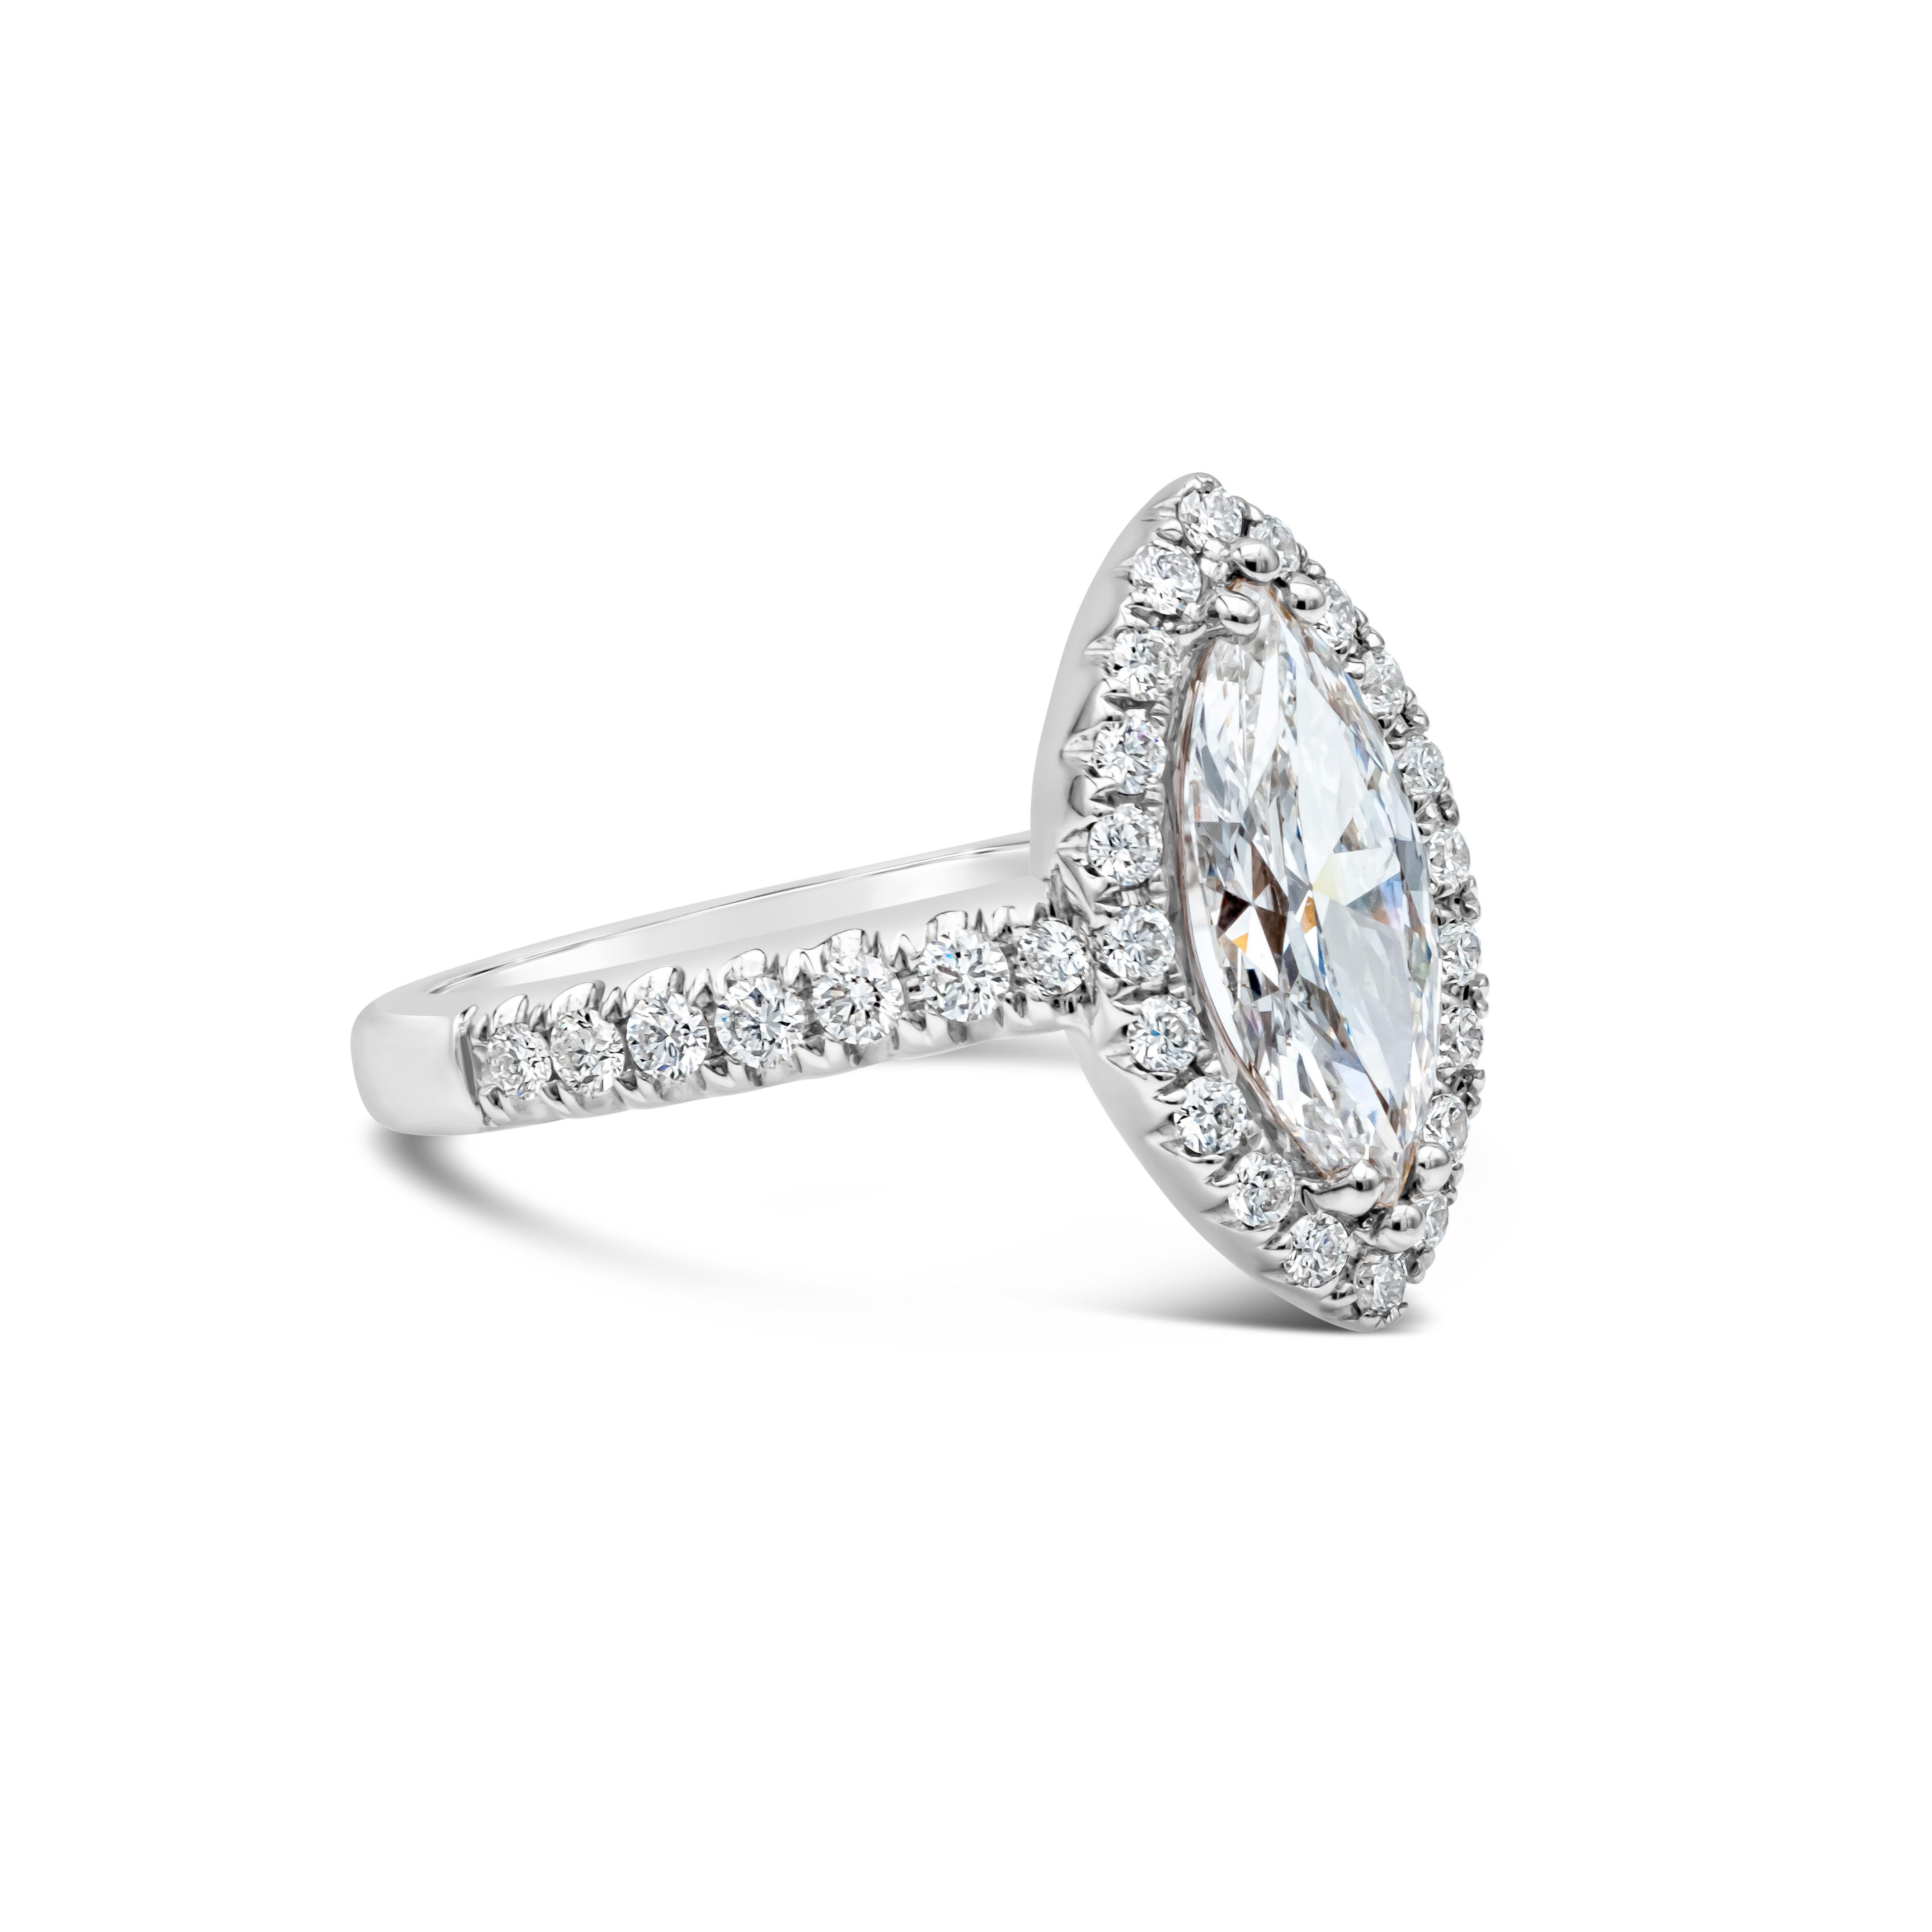 Ein einzigartiger Verlobungsring mit einem GIA-zertifizierten Diamanten im Marquiseschliff von 1,26 Karat, Farbe E und Reinheit SI2. Der Mittelstein wird von einer einzigen Reihe runder Brillanten in Halo-Fassung akzentuiert.  Der Schaft aus 18 K